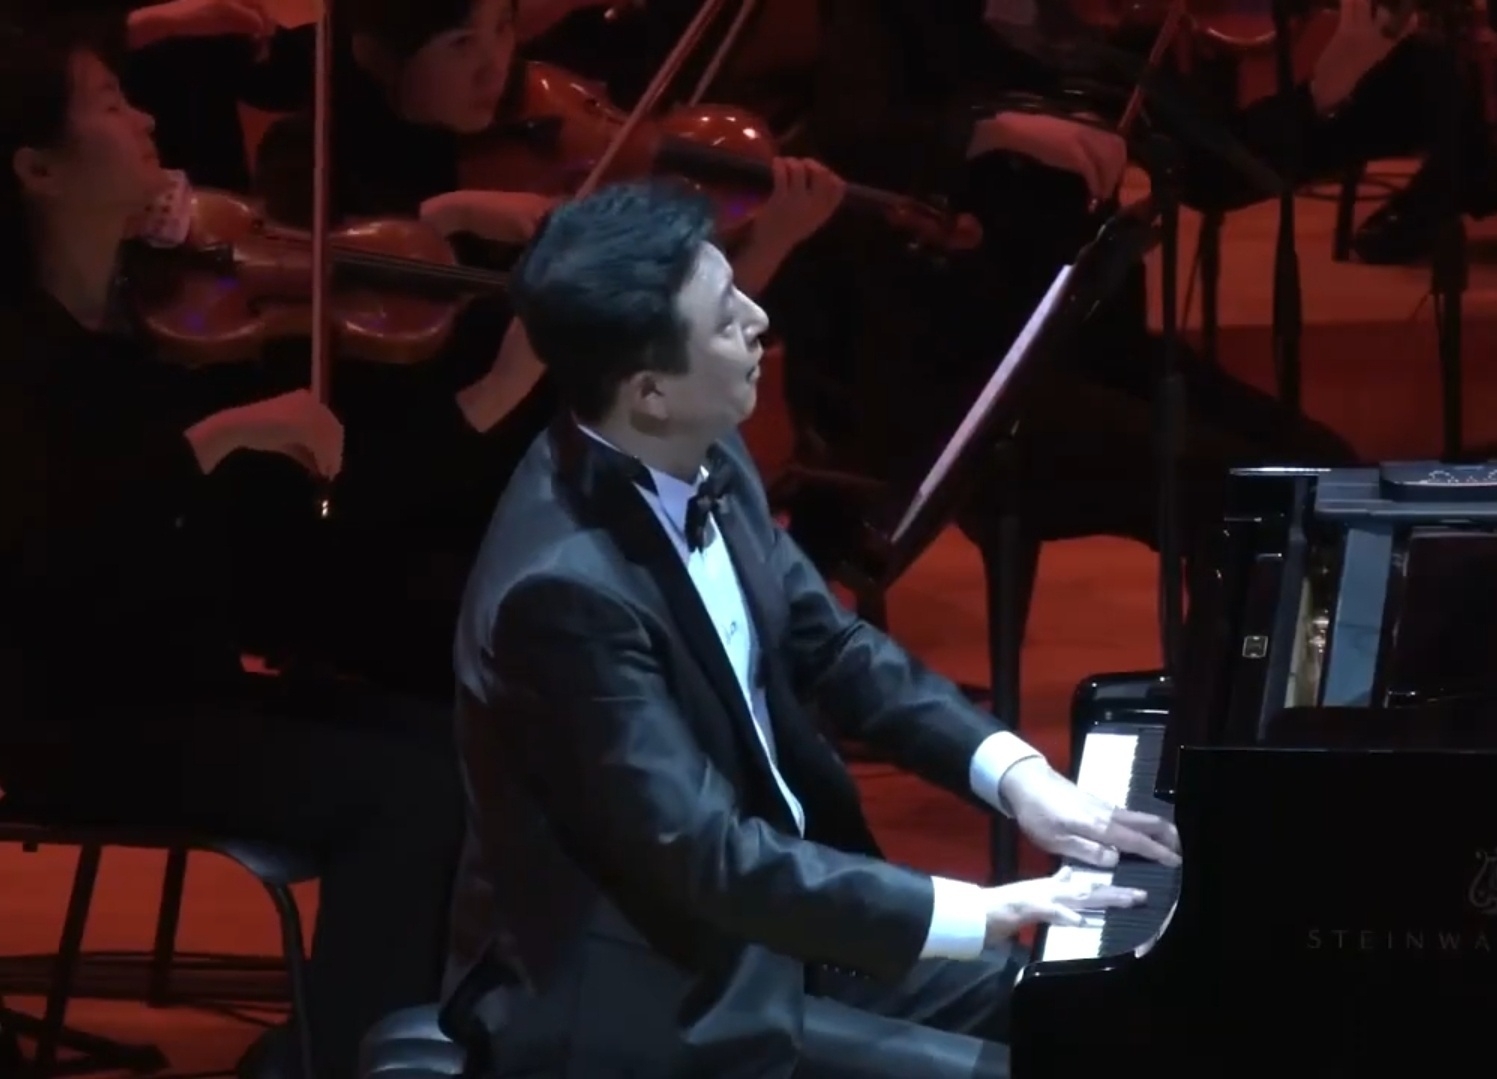 황상혁씨가 지난해 11월 롯데콘서트홀에서 열린 극동방송 가을음악회에서 자신이 편곡한 ‘아리랑’을 연주하는 모습. 황상혁씨 제공